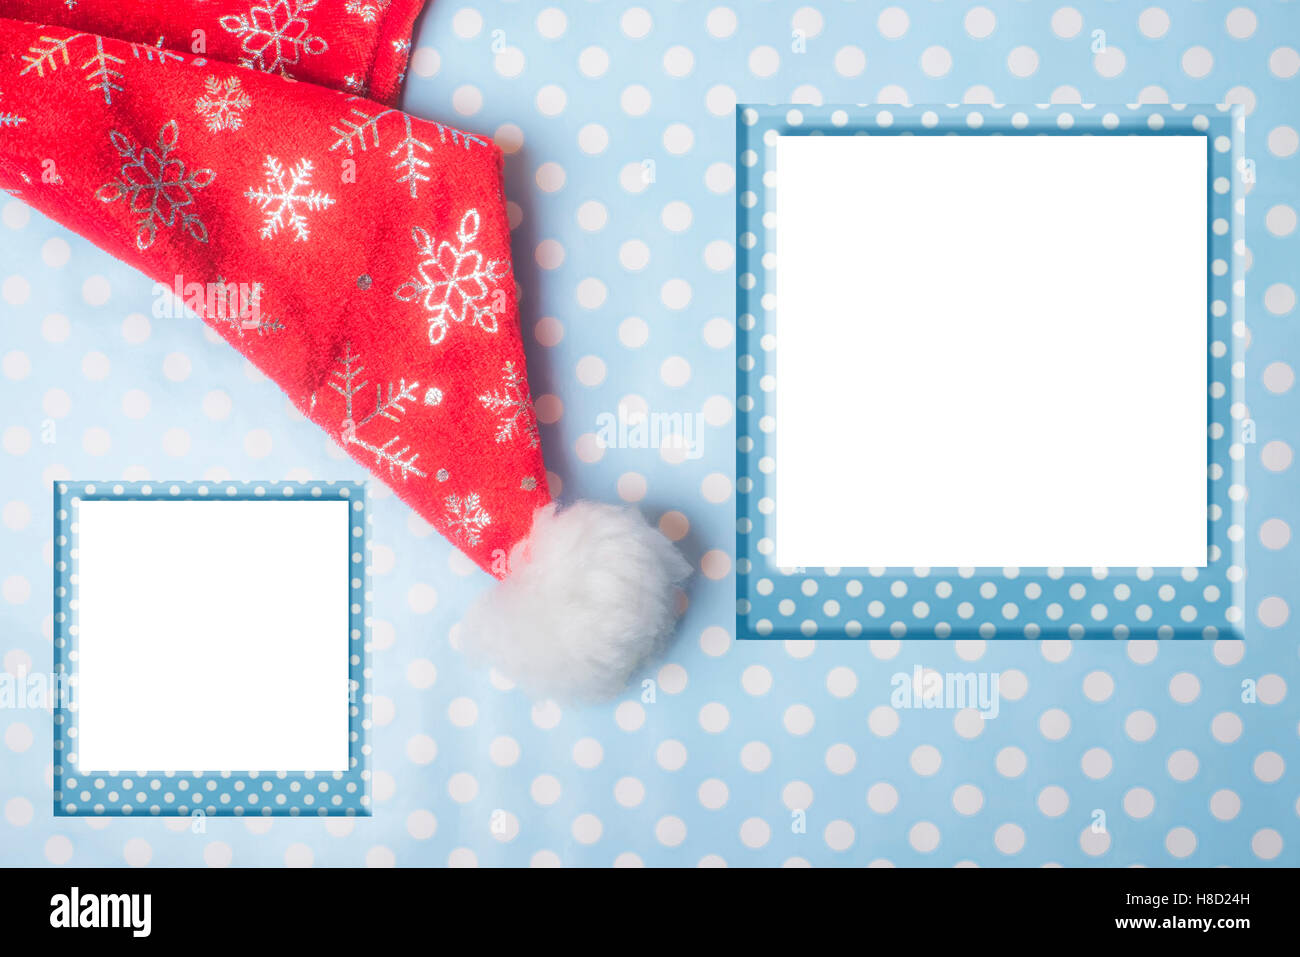 Photo Frame di Natale biglietto di auguri, Santa hat sul polka dot paperand due cornici vuote Foto Stock